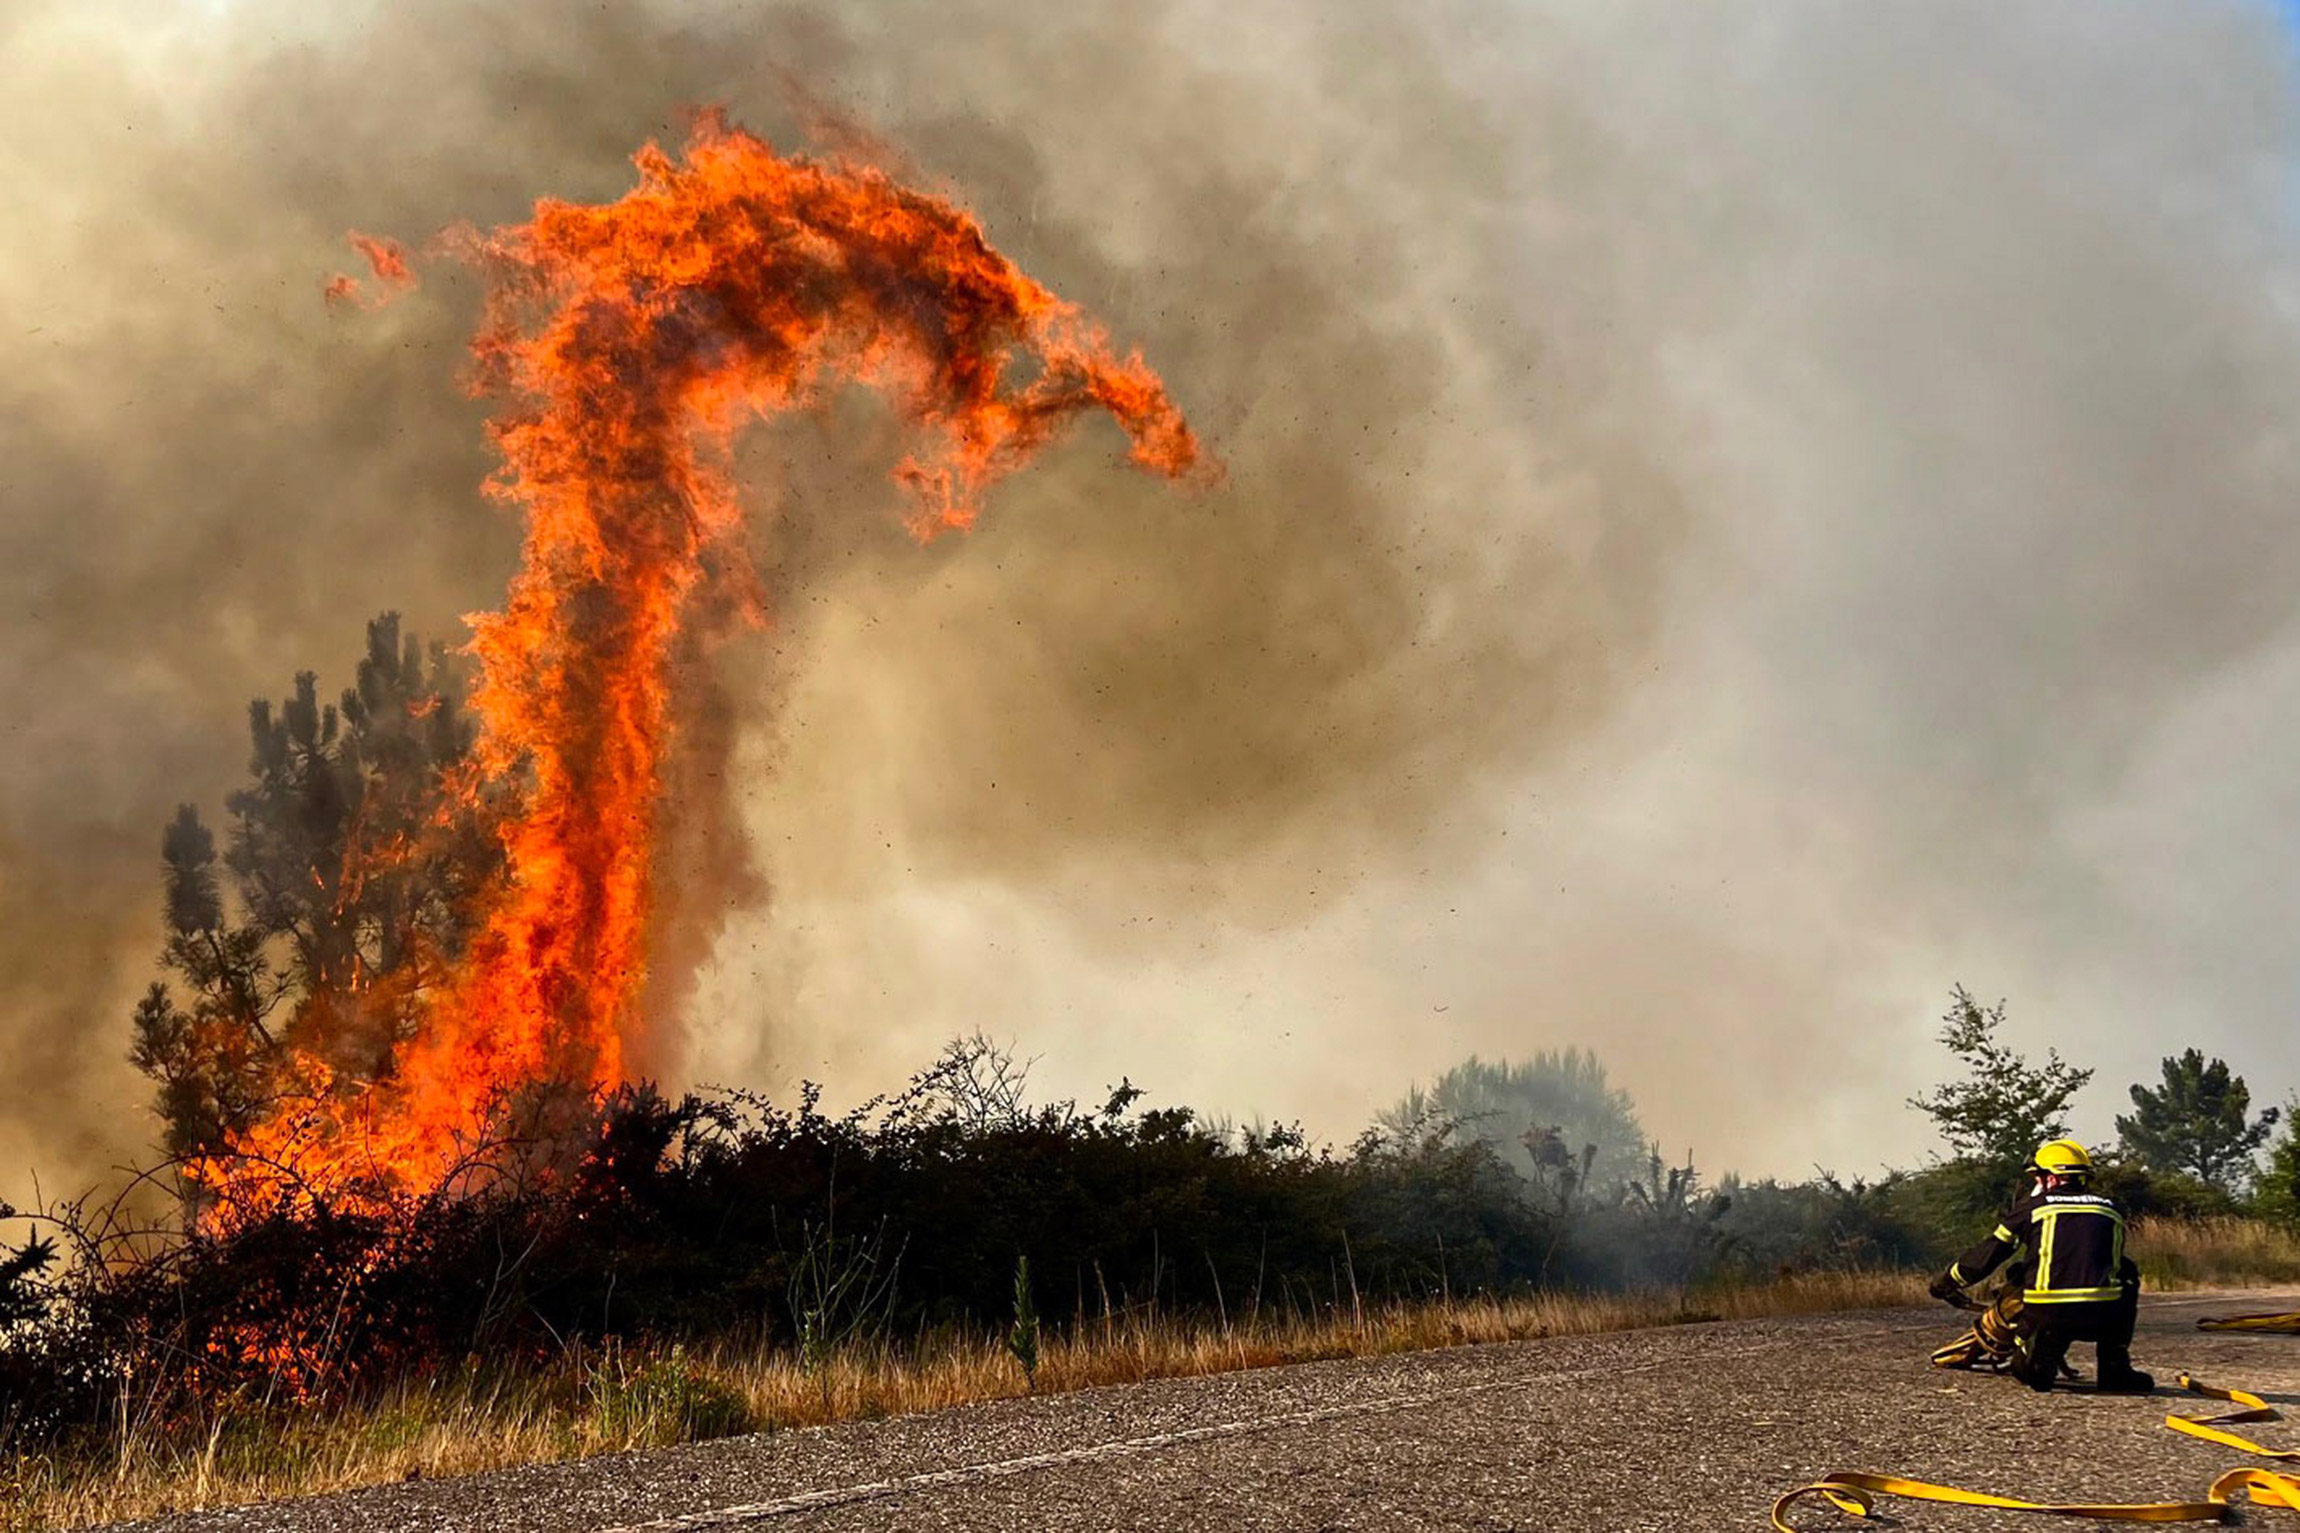 На фото: лесной пожар в Галисии, Испания, 31 июля.
Летом 2022 года Европа переживала аномально жаркое лето, а высокие температуры&nbsp;провоцировали лесные пожары. В 2022 году в Испании было зарегистрировано более 350 таких возгораний, они уничтожили около 230 тыс. га, больше, чем в любой другой стране Европы. За последние десять лет это стало рекордом для королевства. Около 96% лесных пожаров были вызваны деятельностью человека, 54%&nbsp;&mdash; поджогами, заявил генеральный секретарь Ассоциации инженеров лесного хозяйства Испании Рауль де ла Калле